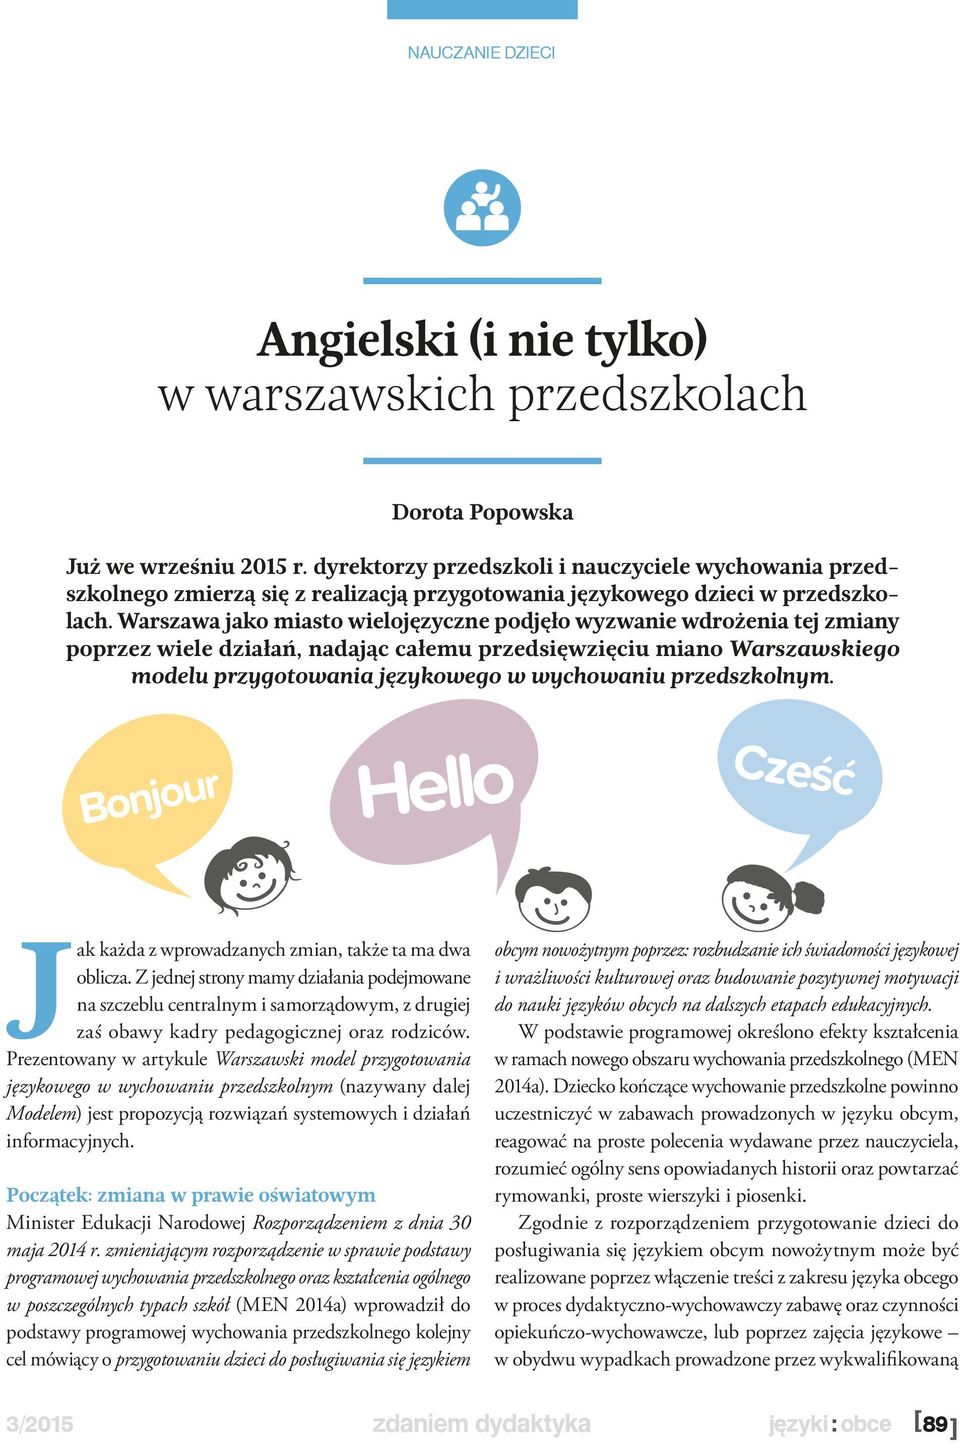 Warszawa jako miasto wielojęzyczne podjęło wyzwanie wdrożenia tej zmiany poprzez wiele działań, nadając całemu przedsięwzięciu miano Warszawskiego modelu przygotowania językowego w wychowaniu